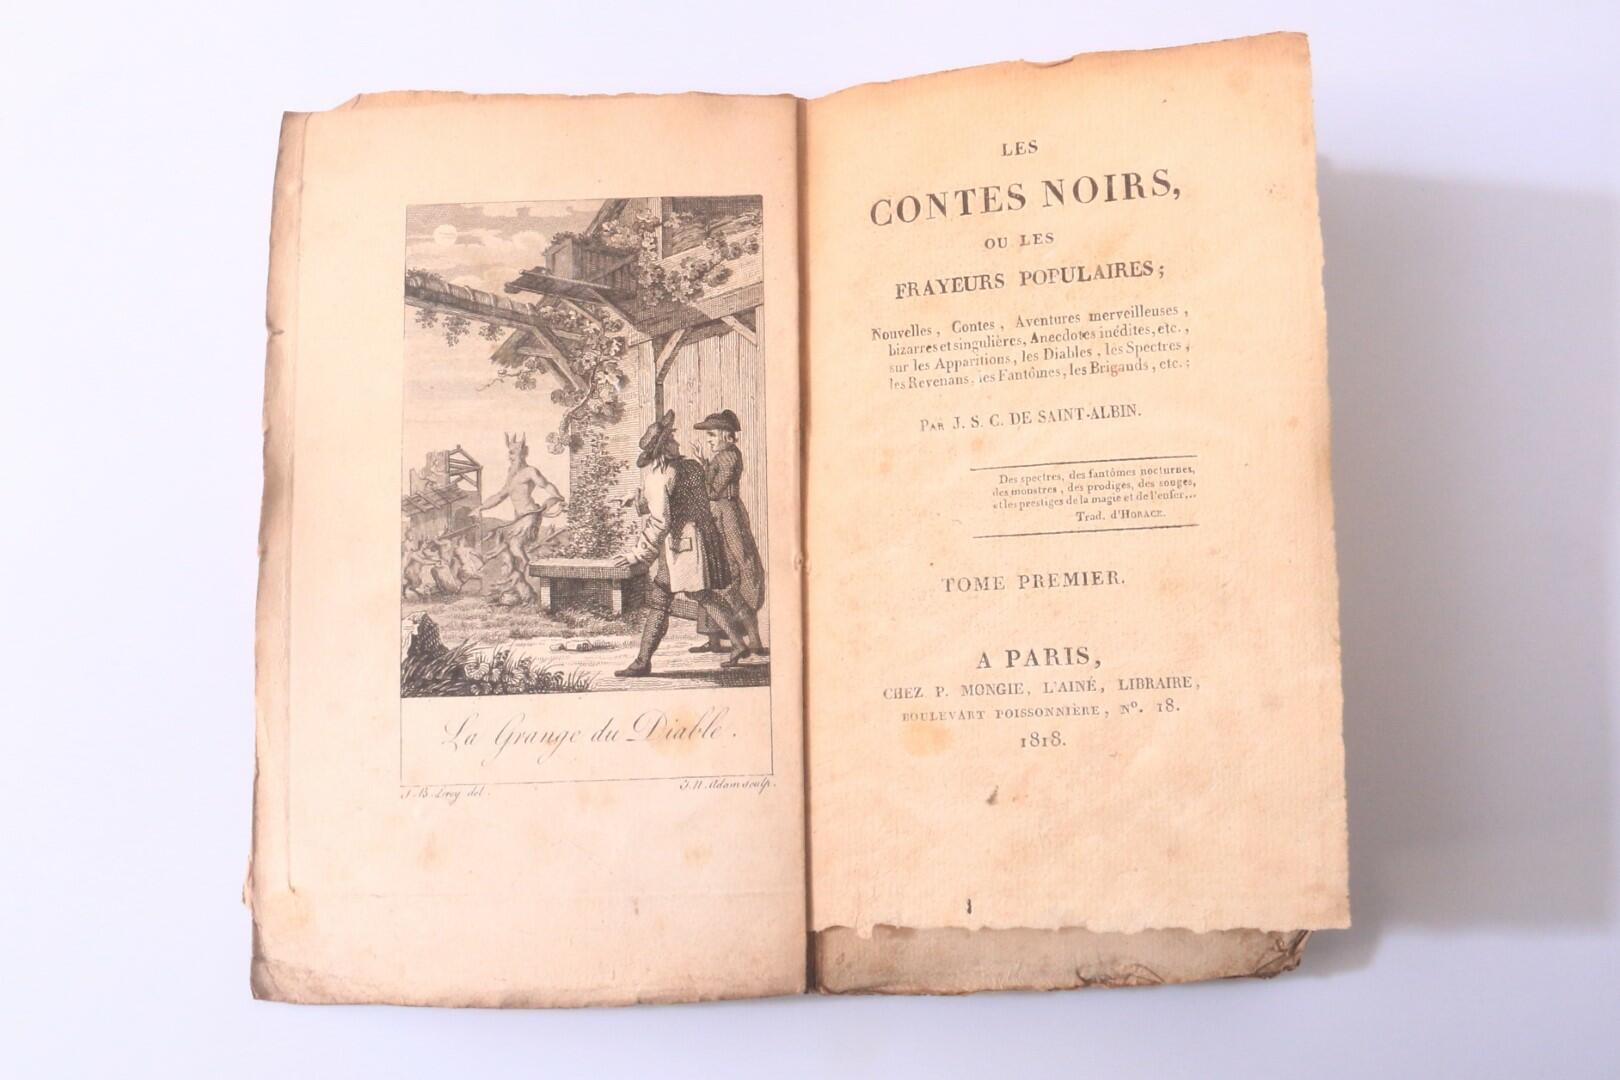 J.S.C. De Saint-Albin [Jacques Collin de Plancy] - Les Contes Noirs ou Les Frayeurs Populaires - P. Mongie, 1818, First Edition.